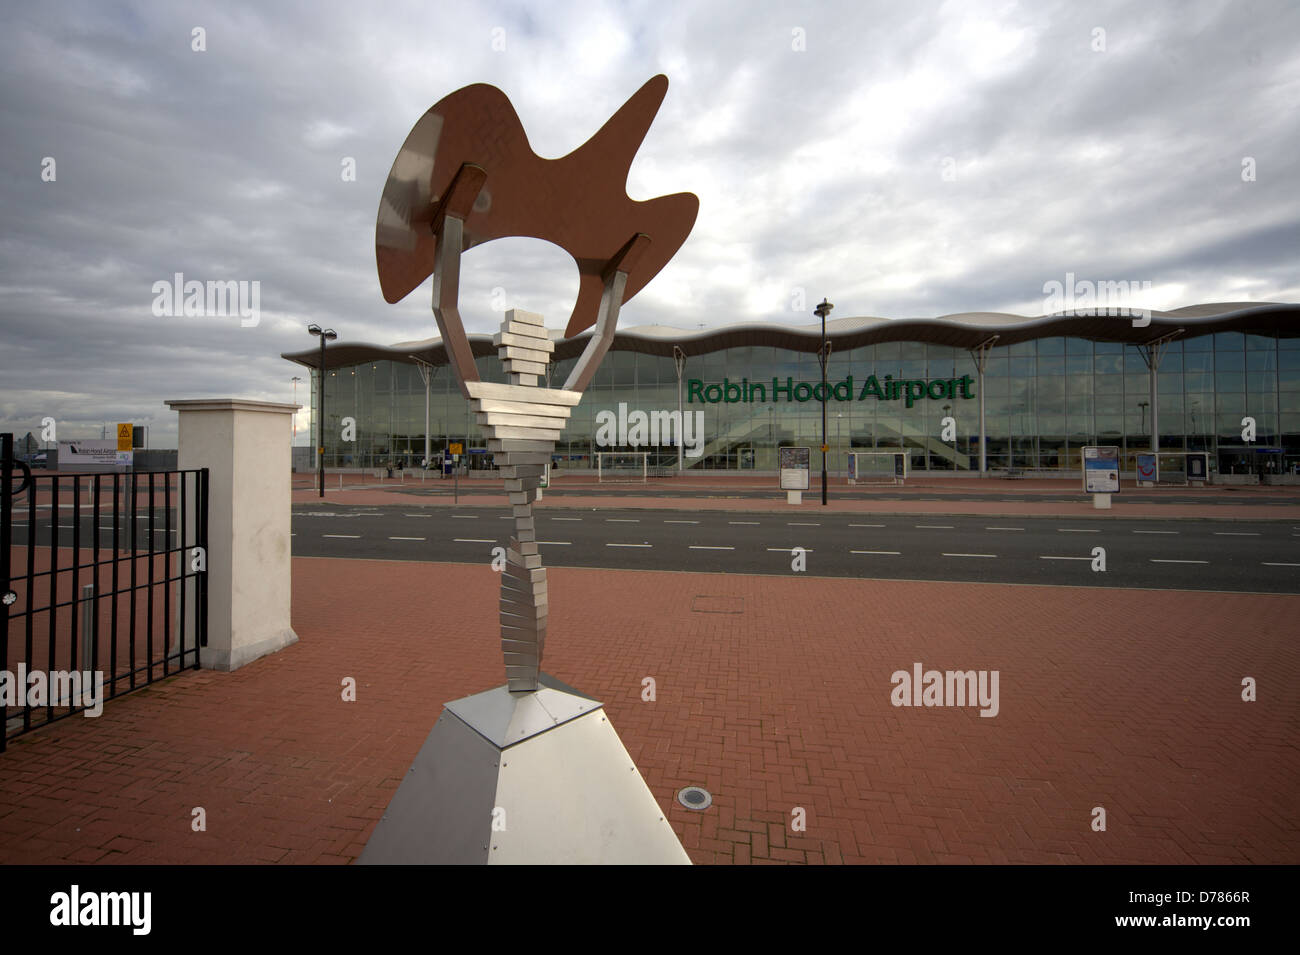 L'Aeroporto Robin Hood Doncaster Sheffield (IATA: DSA, ICAO: EGCN) è un aeroporto internazionale Foto Stock